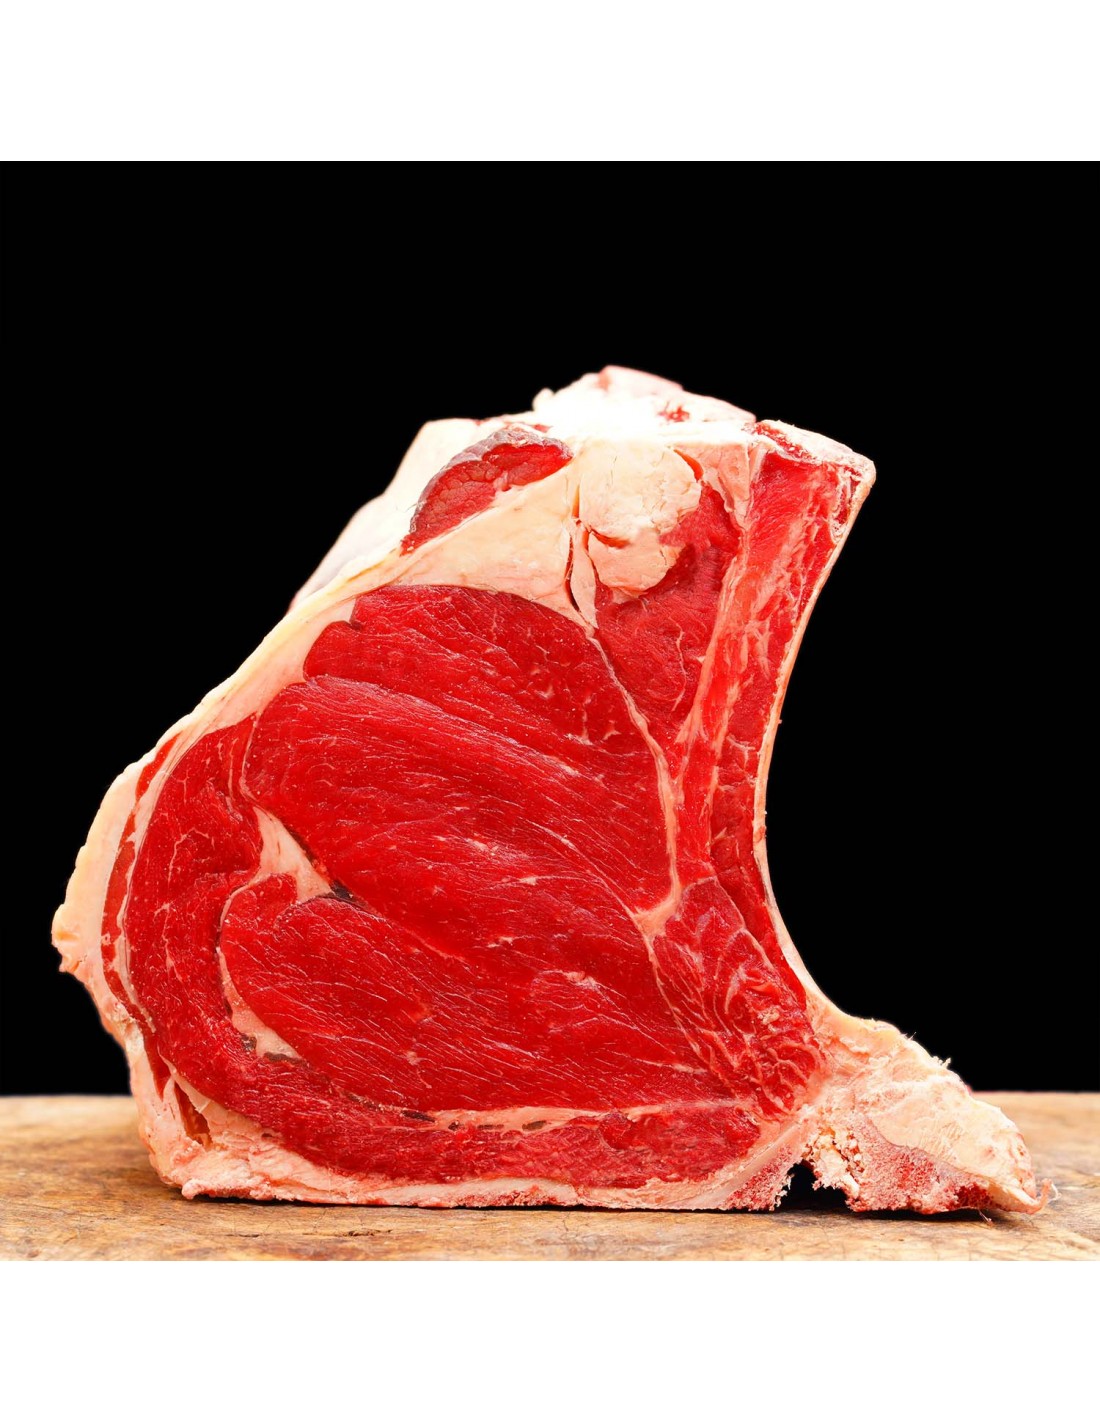 Viande grillée : Sélection des meilleures viandes à faire griller